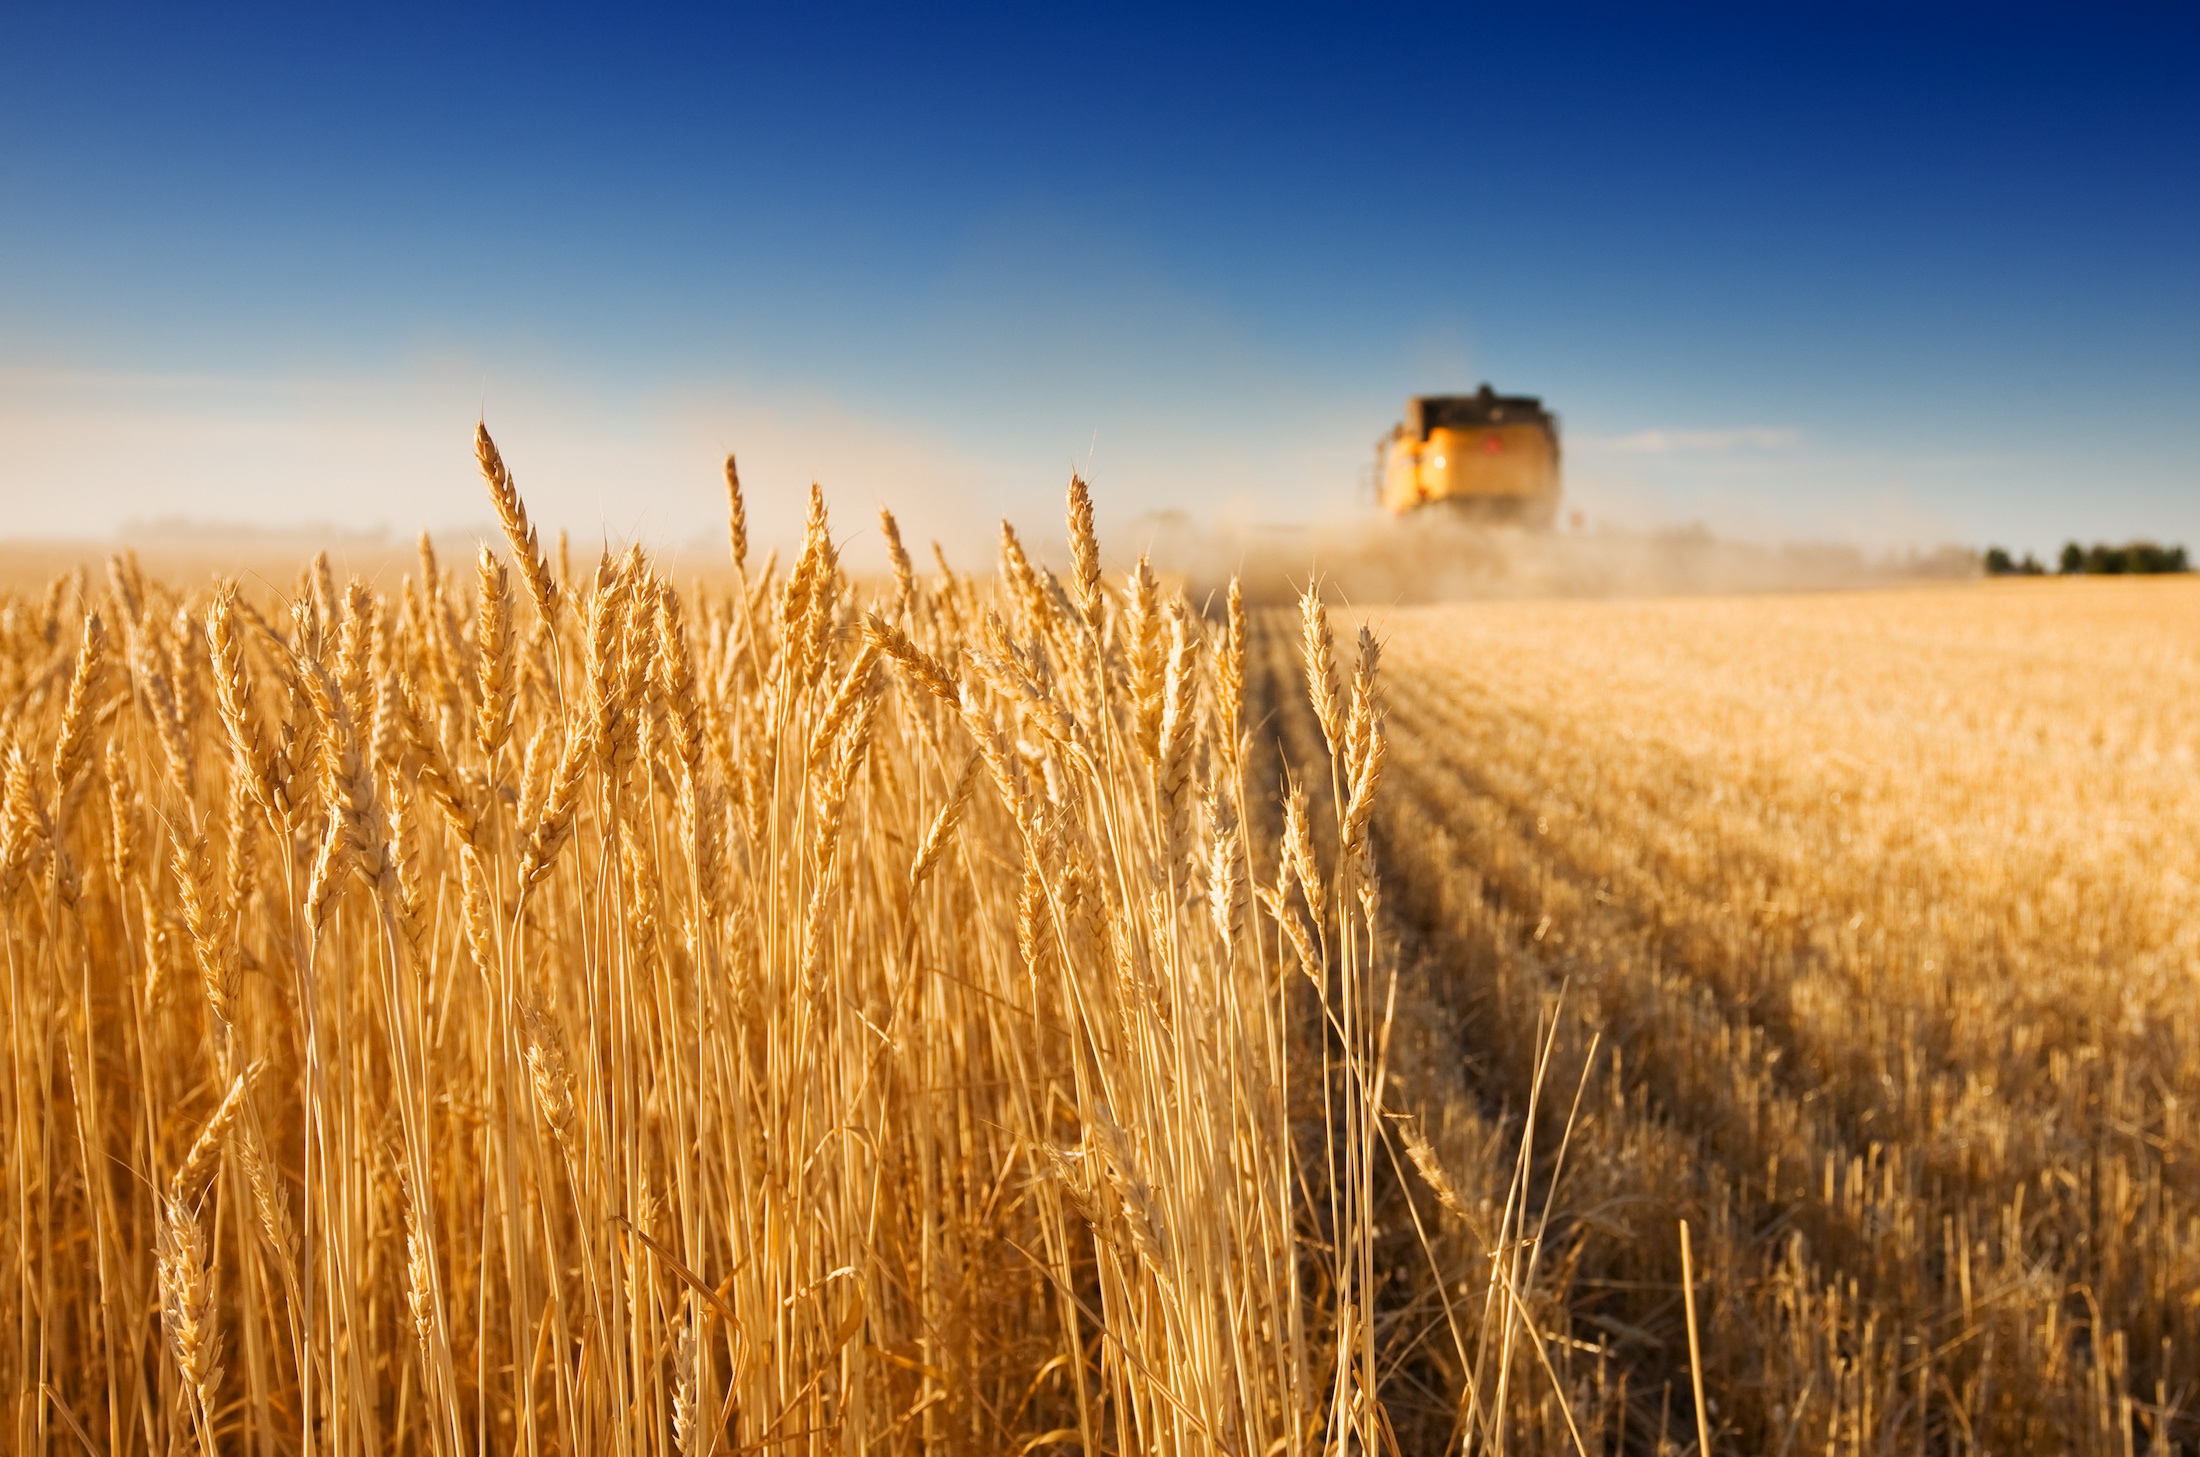 Les pratiques agricoles seraient une source tout aussi importante de particules fines que le transport et l'industrie. © Sly, Adobe Stock